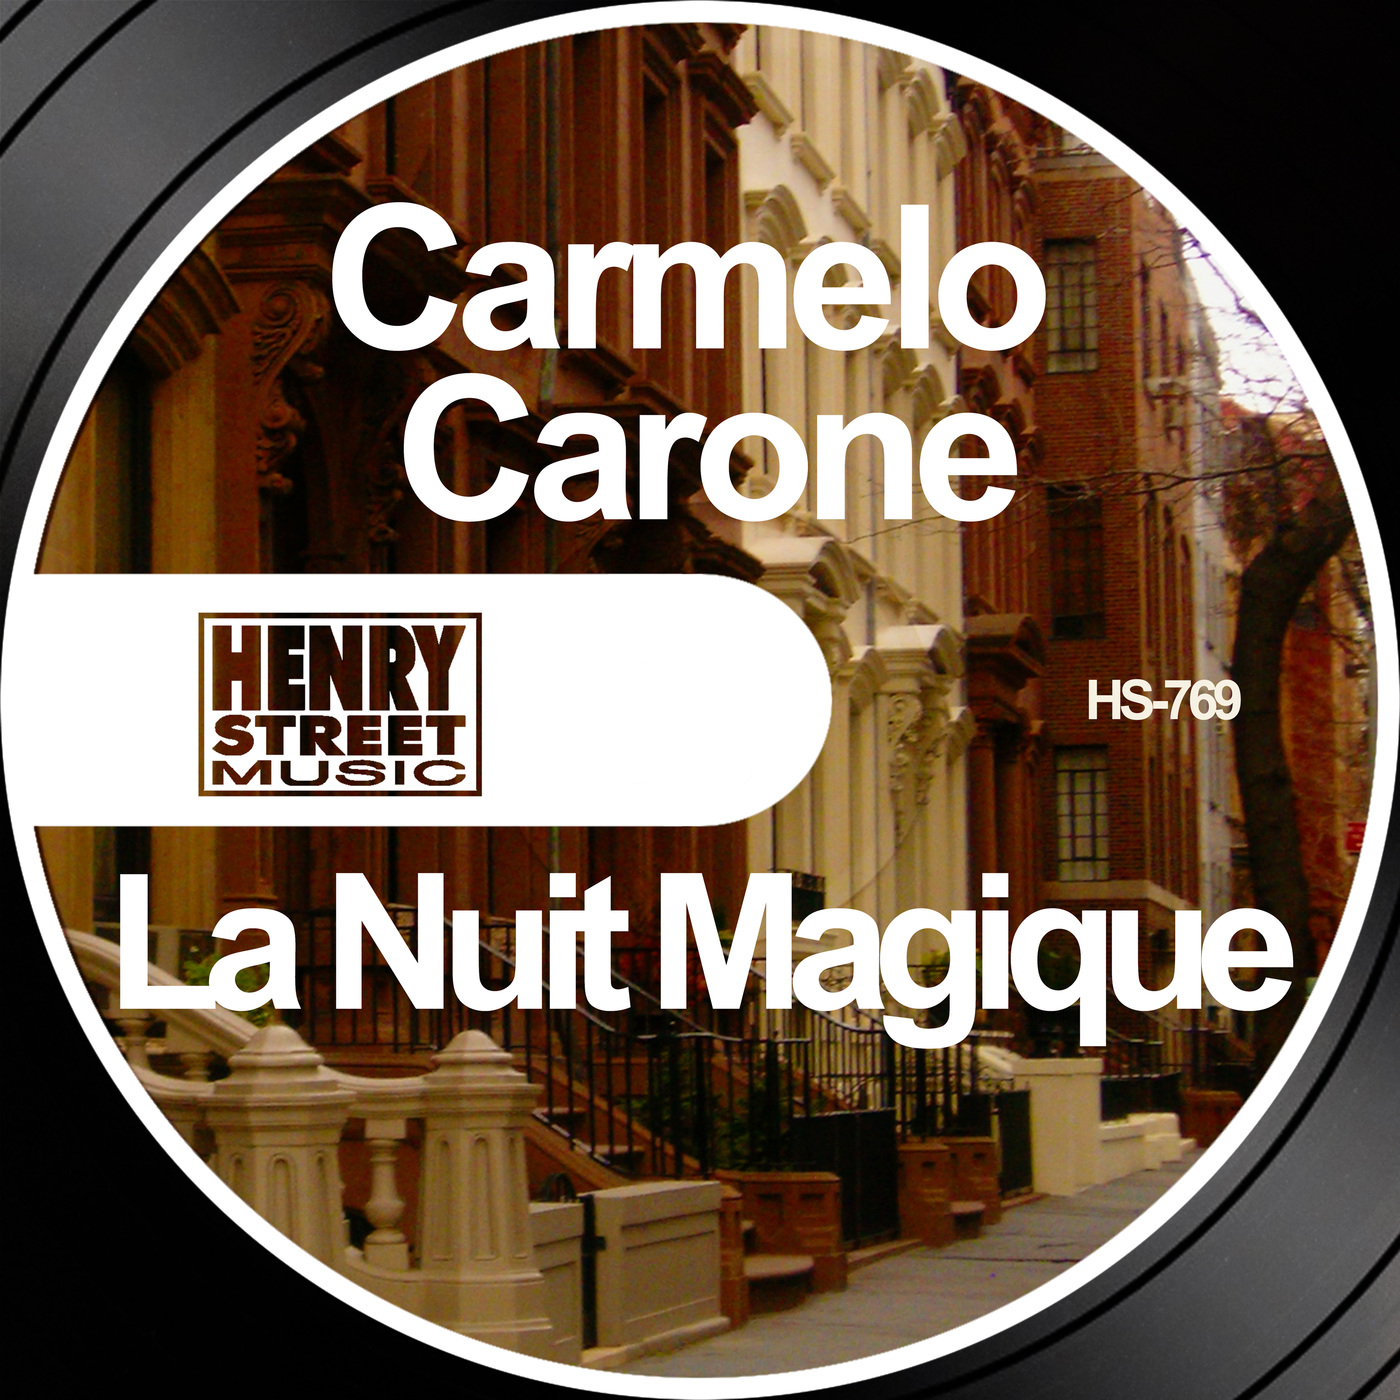 Carmelo Carone - La Nuit Magique / Henry Street Music